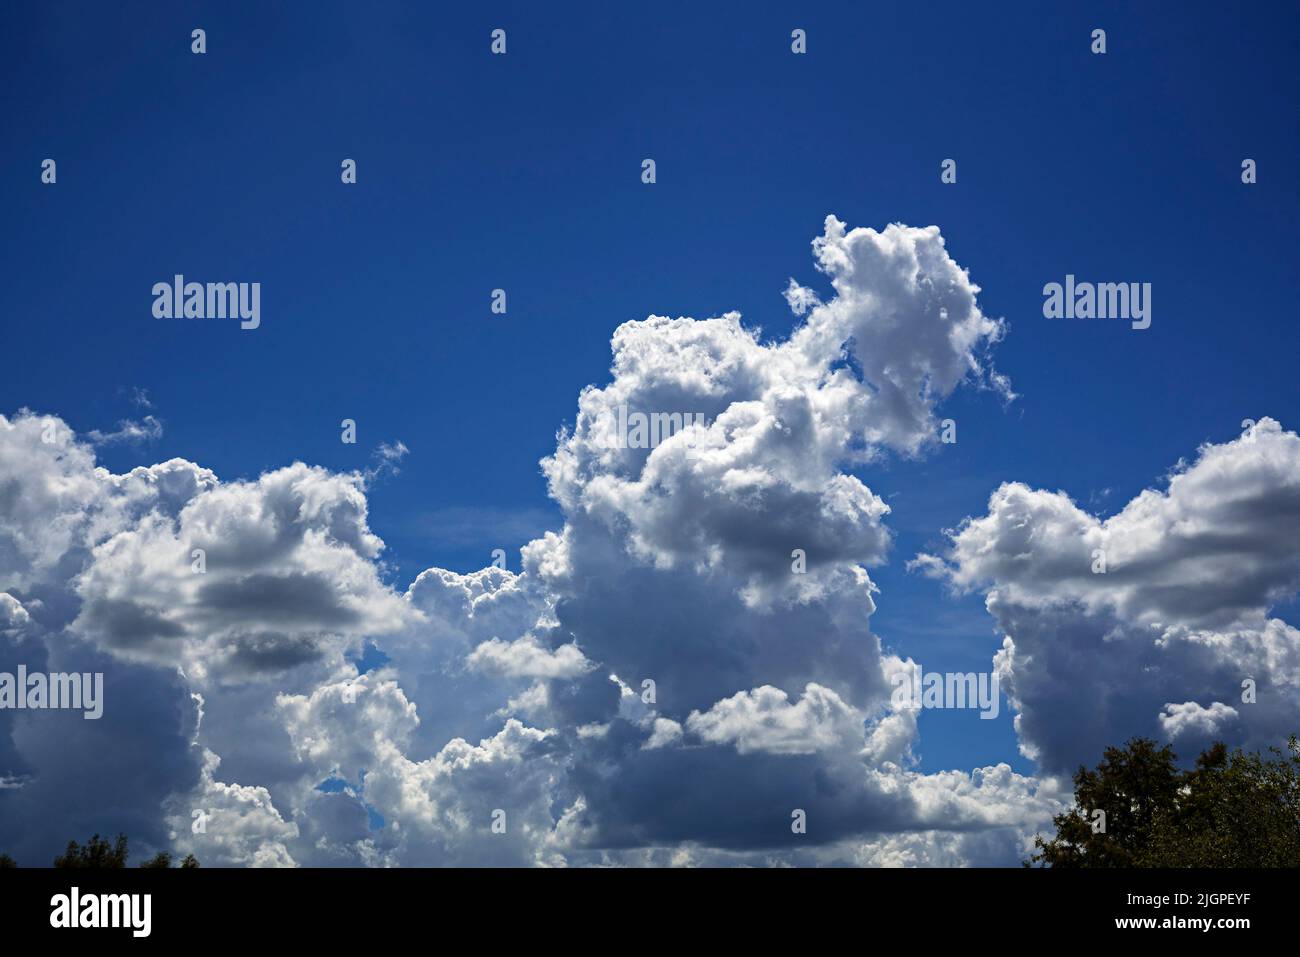 Wunderschöner blauer Himmel, der an einem schönen Sommertag in Nord-Zentral-Florida mit geschwollenen weißen Wolken bevölkert ist. Stockfoto